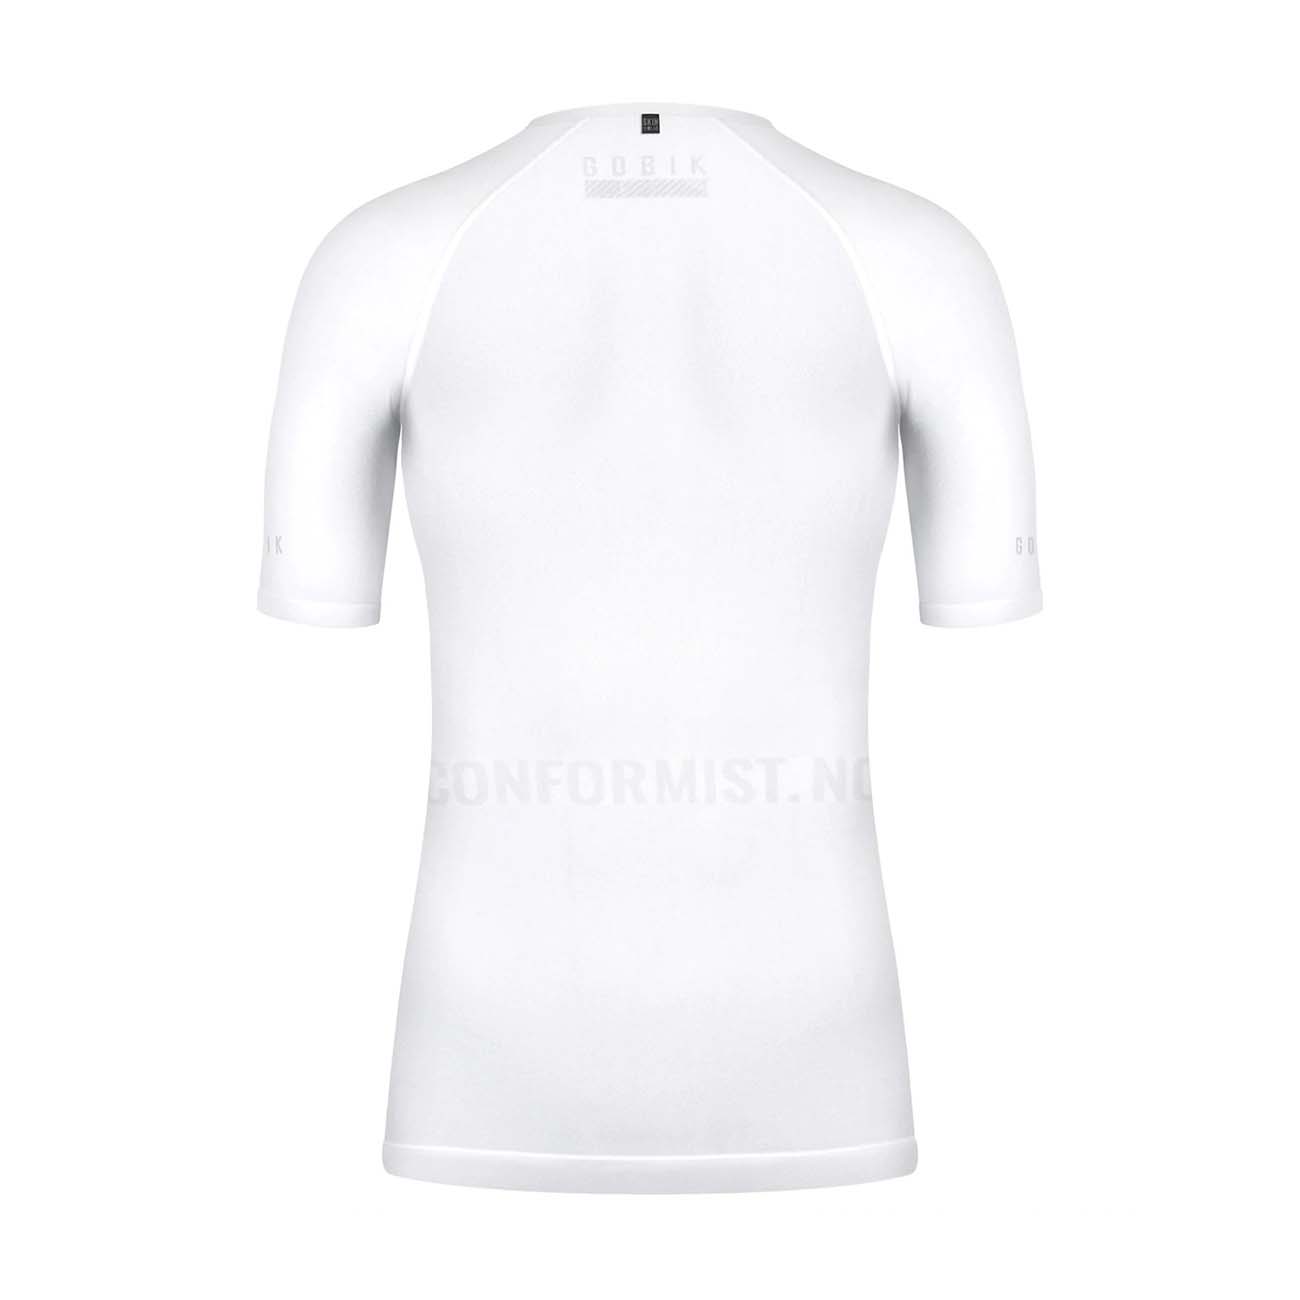 GOBIK Kolarska Koszulka Z Krótkim Rękawem - LIMBER SKIN LADY - Biały